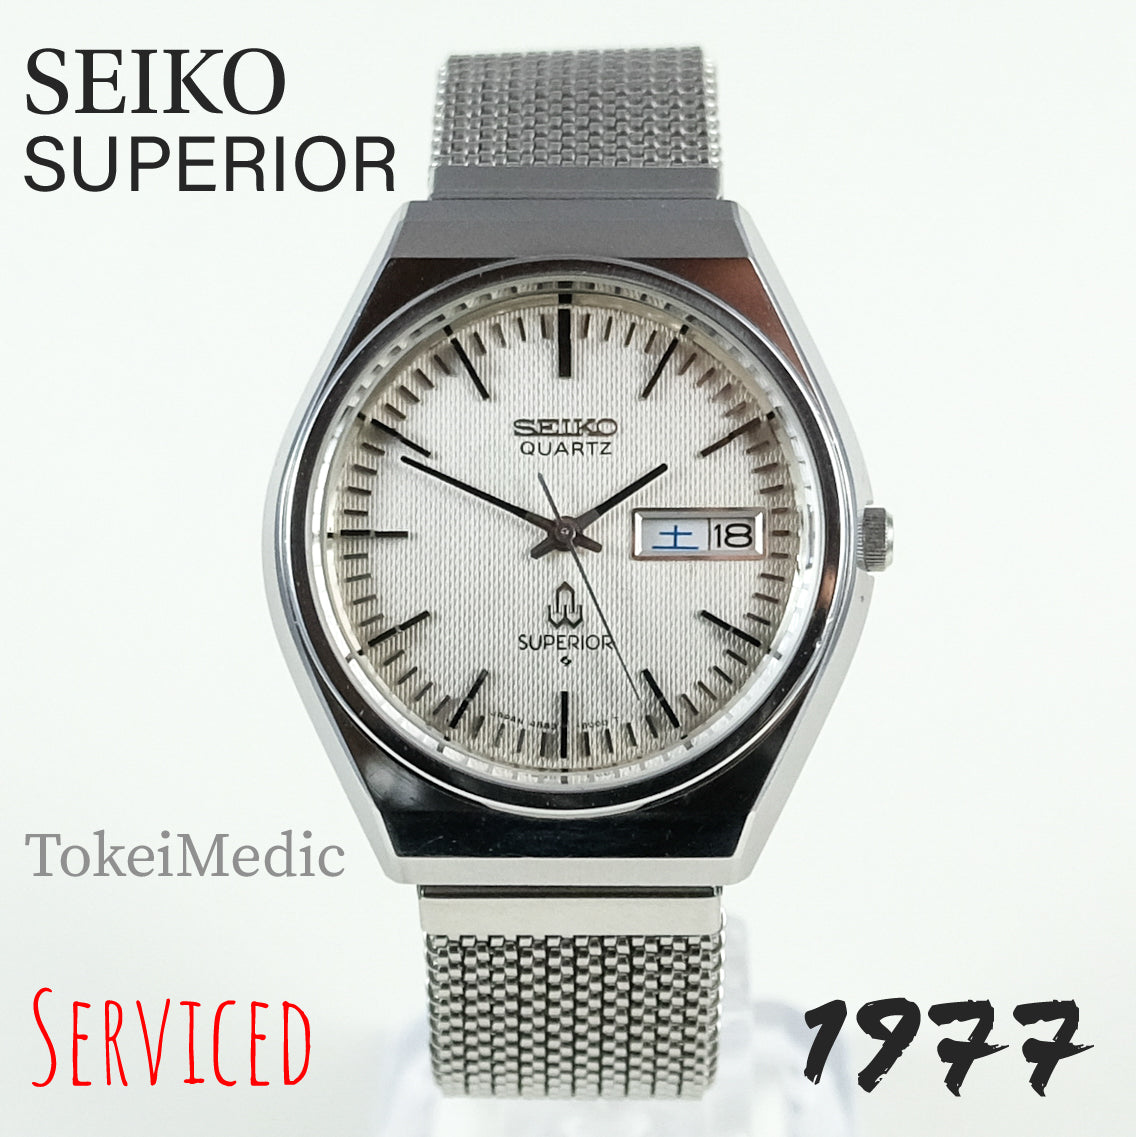 1977 Seiko Superior 4883-8001